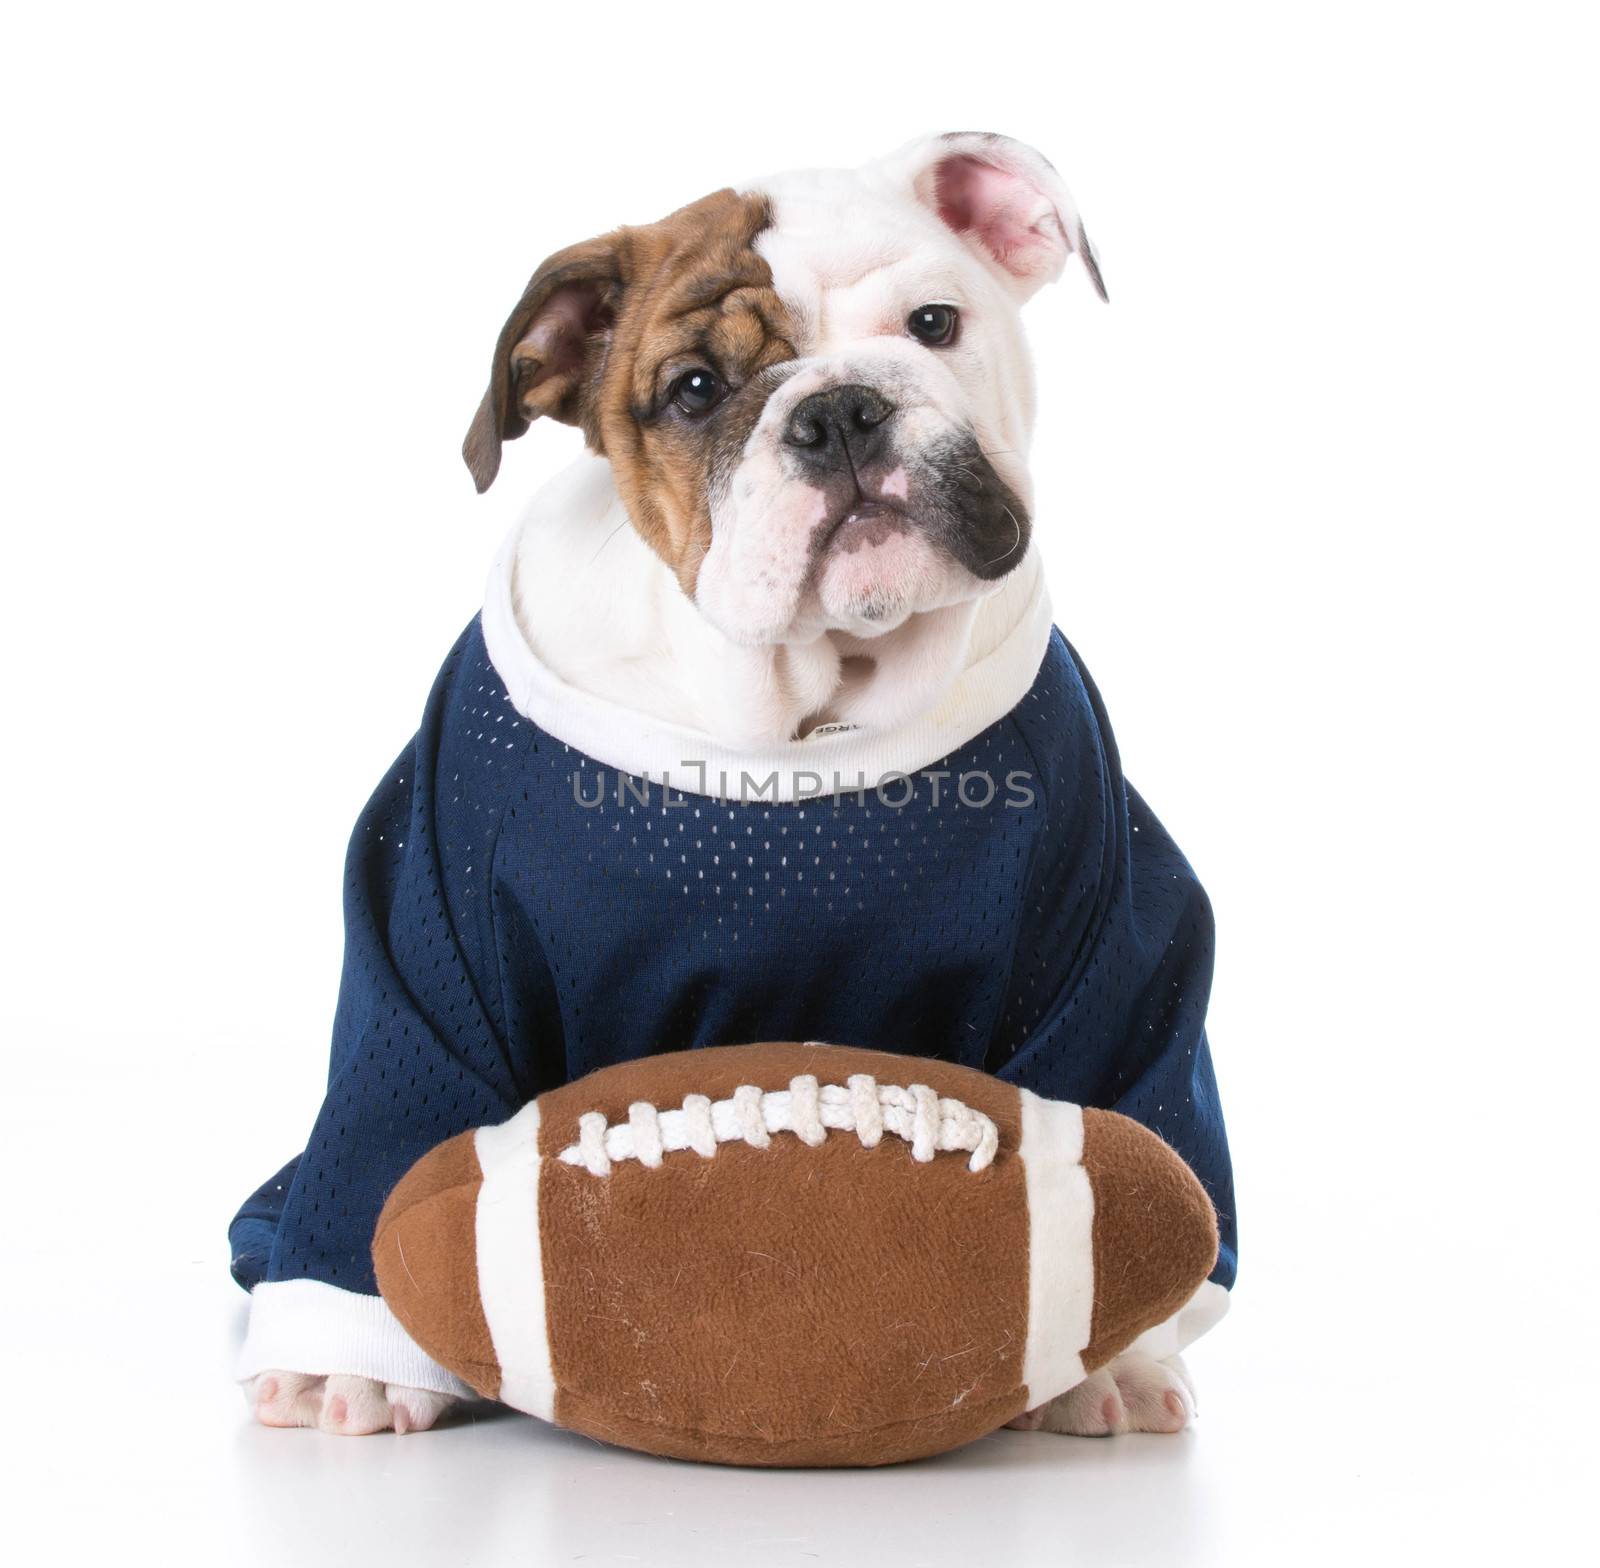 cute english bulldog puppy wearing football jersey on white background